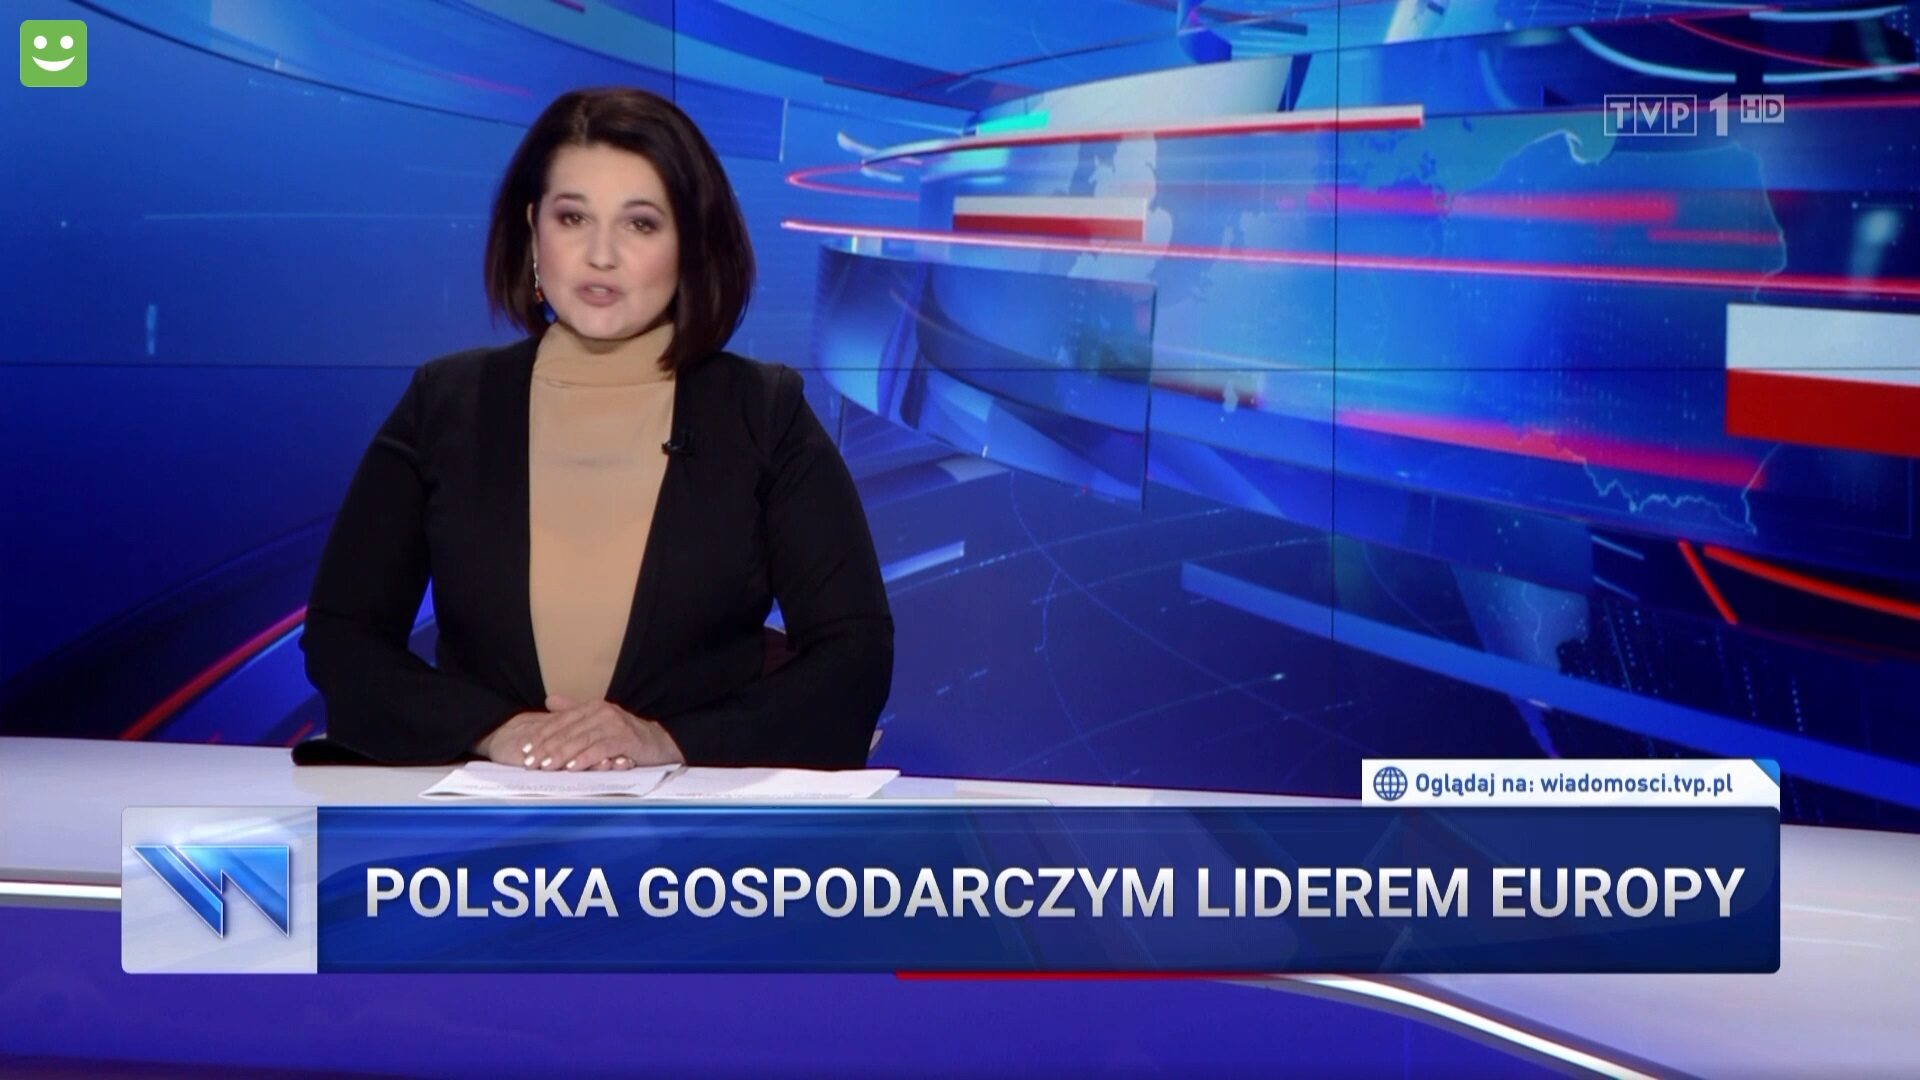 TVP news links the CJEU judge to Tusk.  “Poland’s success irritates”